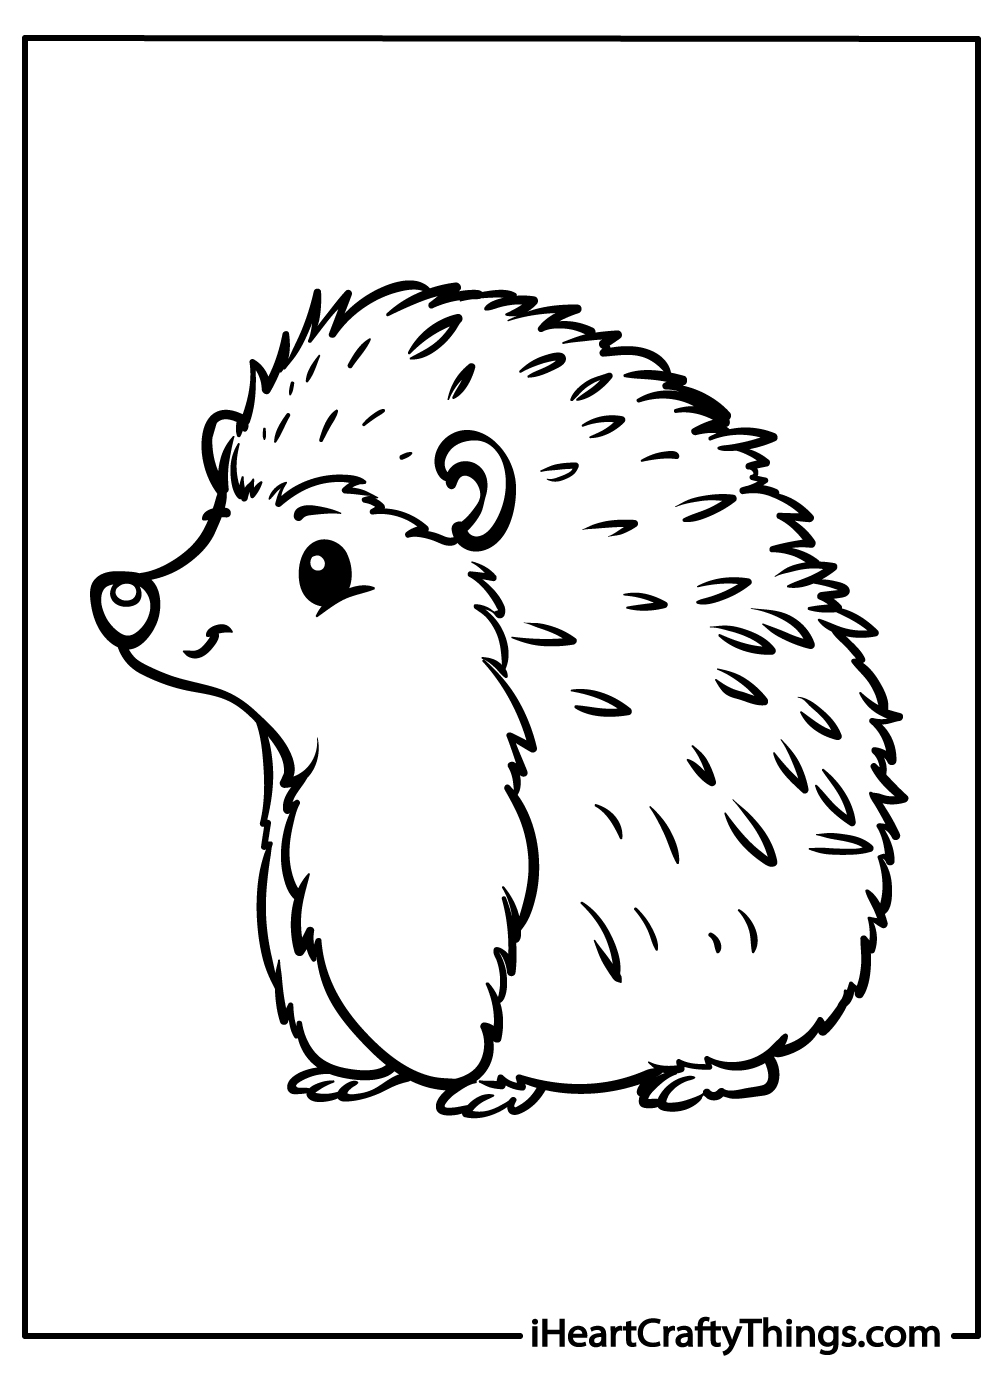 little hedgehog coloring sheets for kids